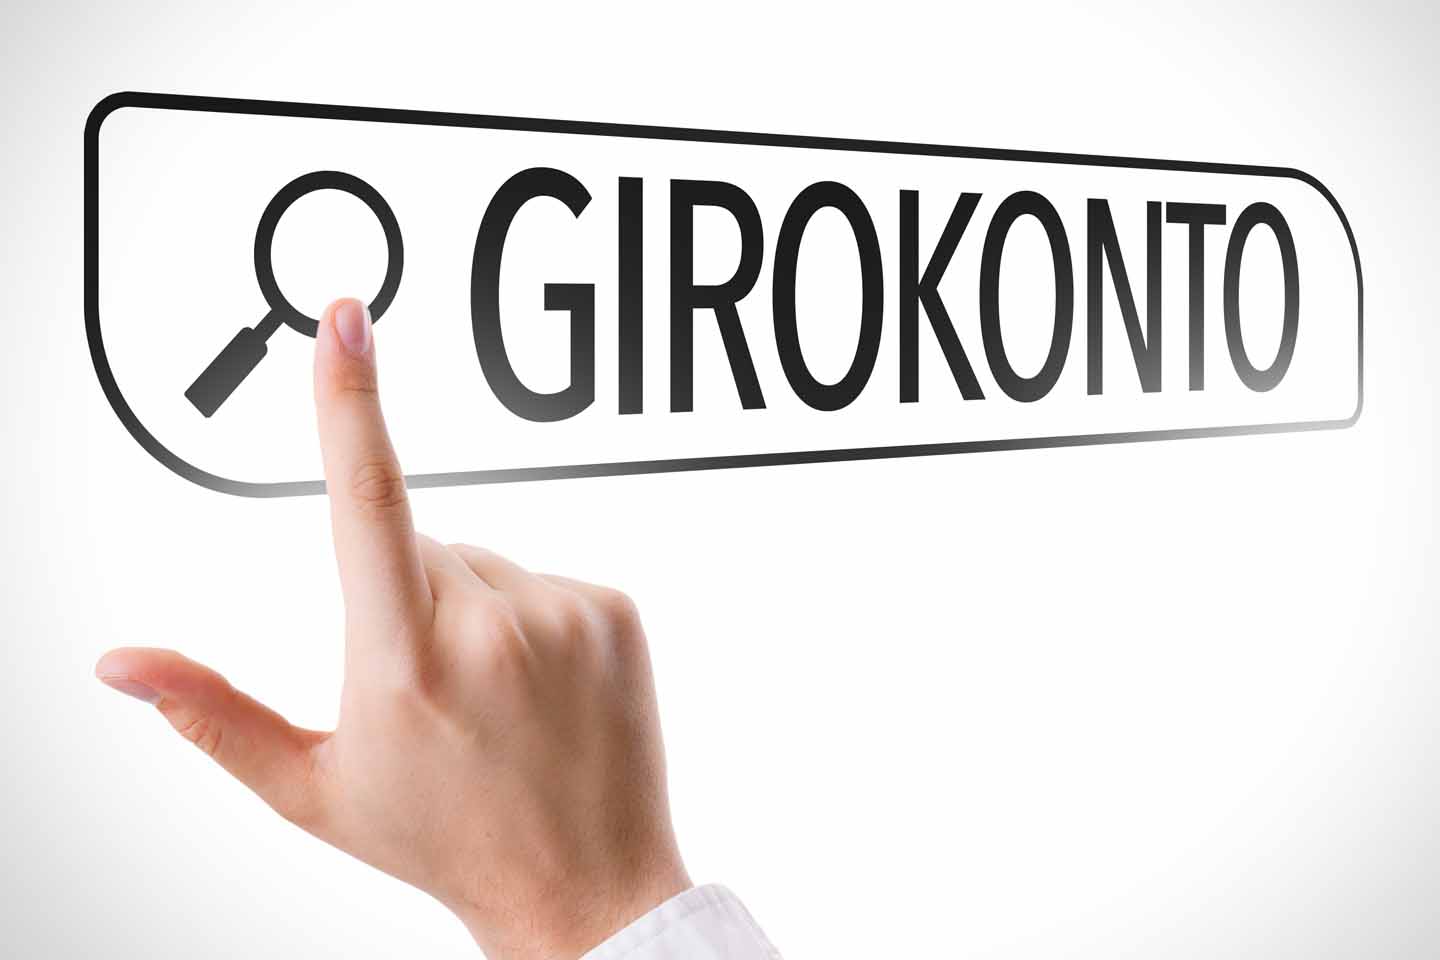 In einem Suchfeld steht "Girokonto". Ein Zeigefinger tippt auf die Lupe, um die Suche zu starten.